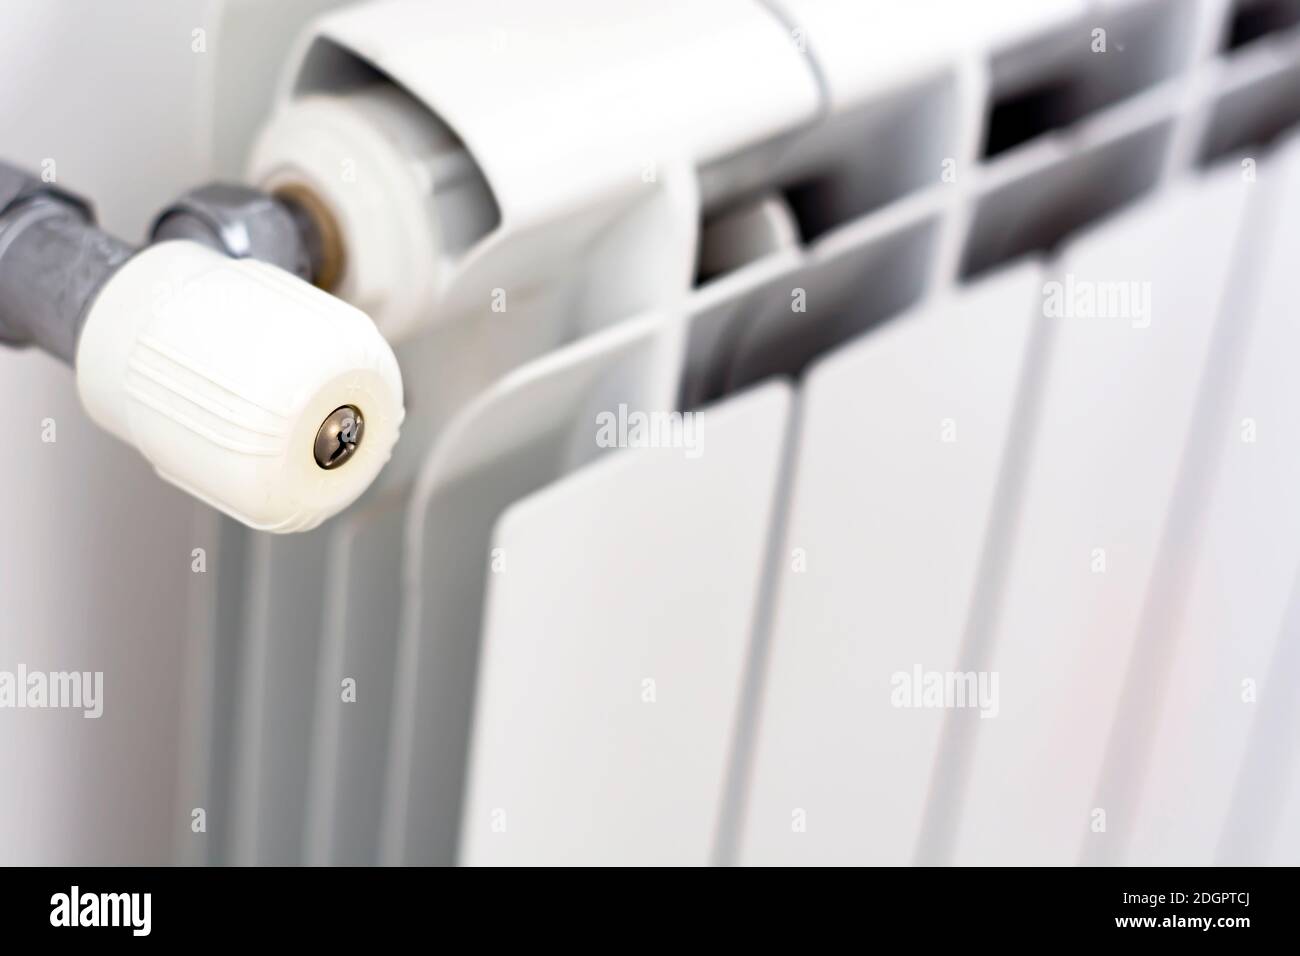 vue rapprochée du bouton blanc qui règle la température du radiateur. Chauffage et saison d'hiver Banque D'Images